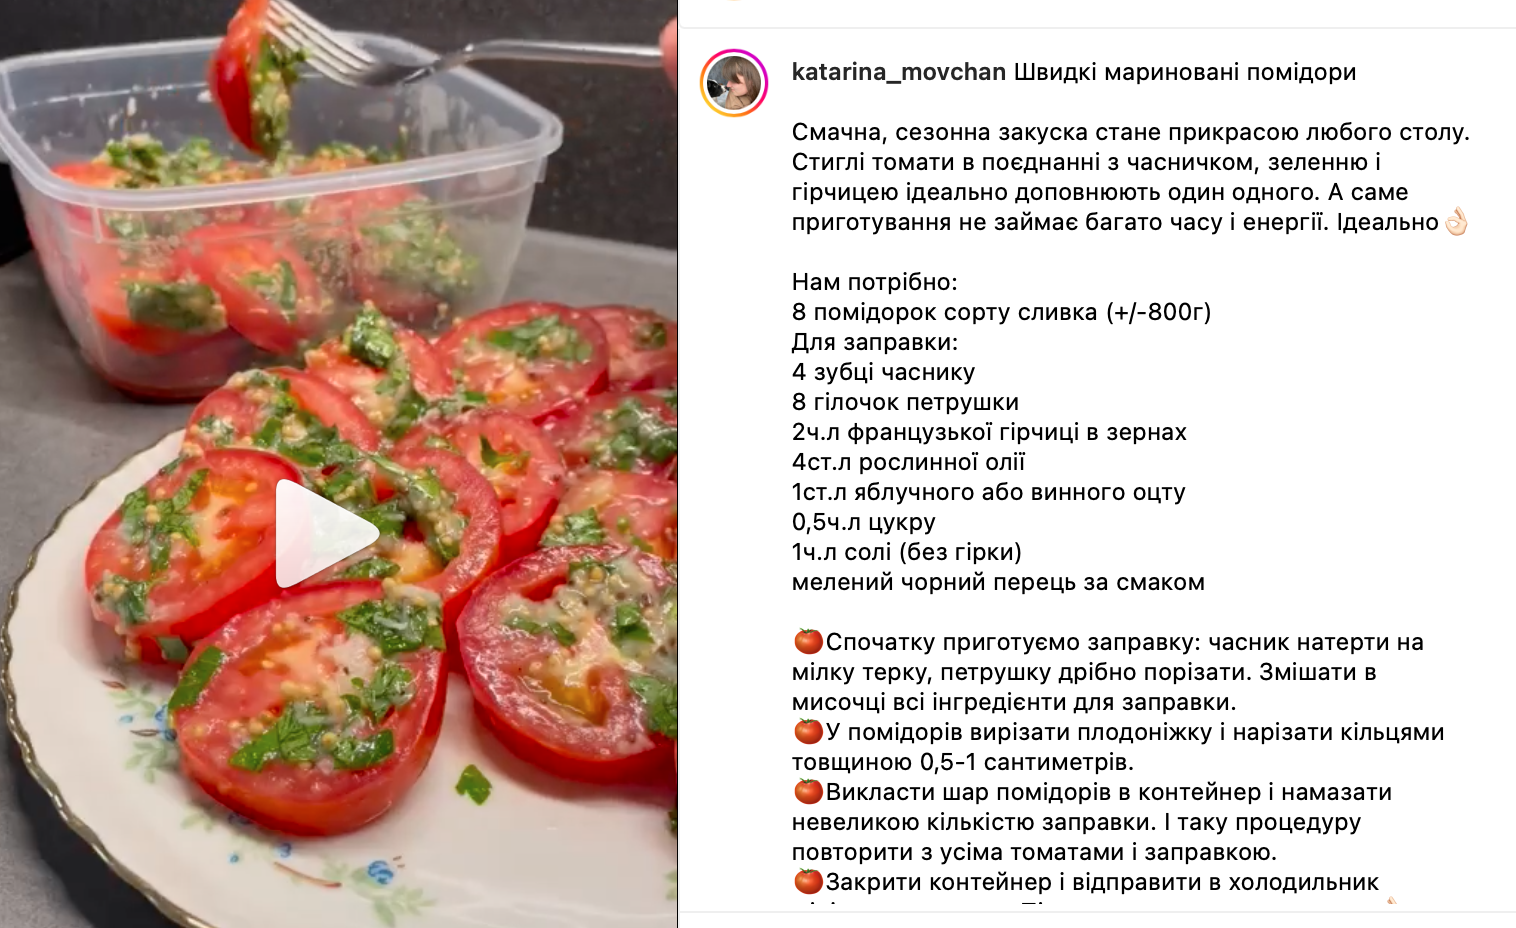 Tomato recipe